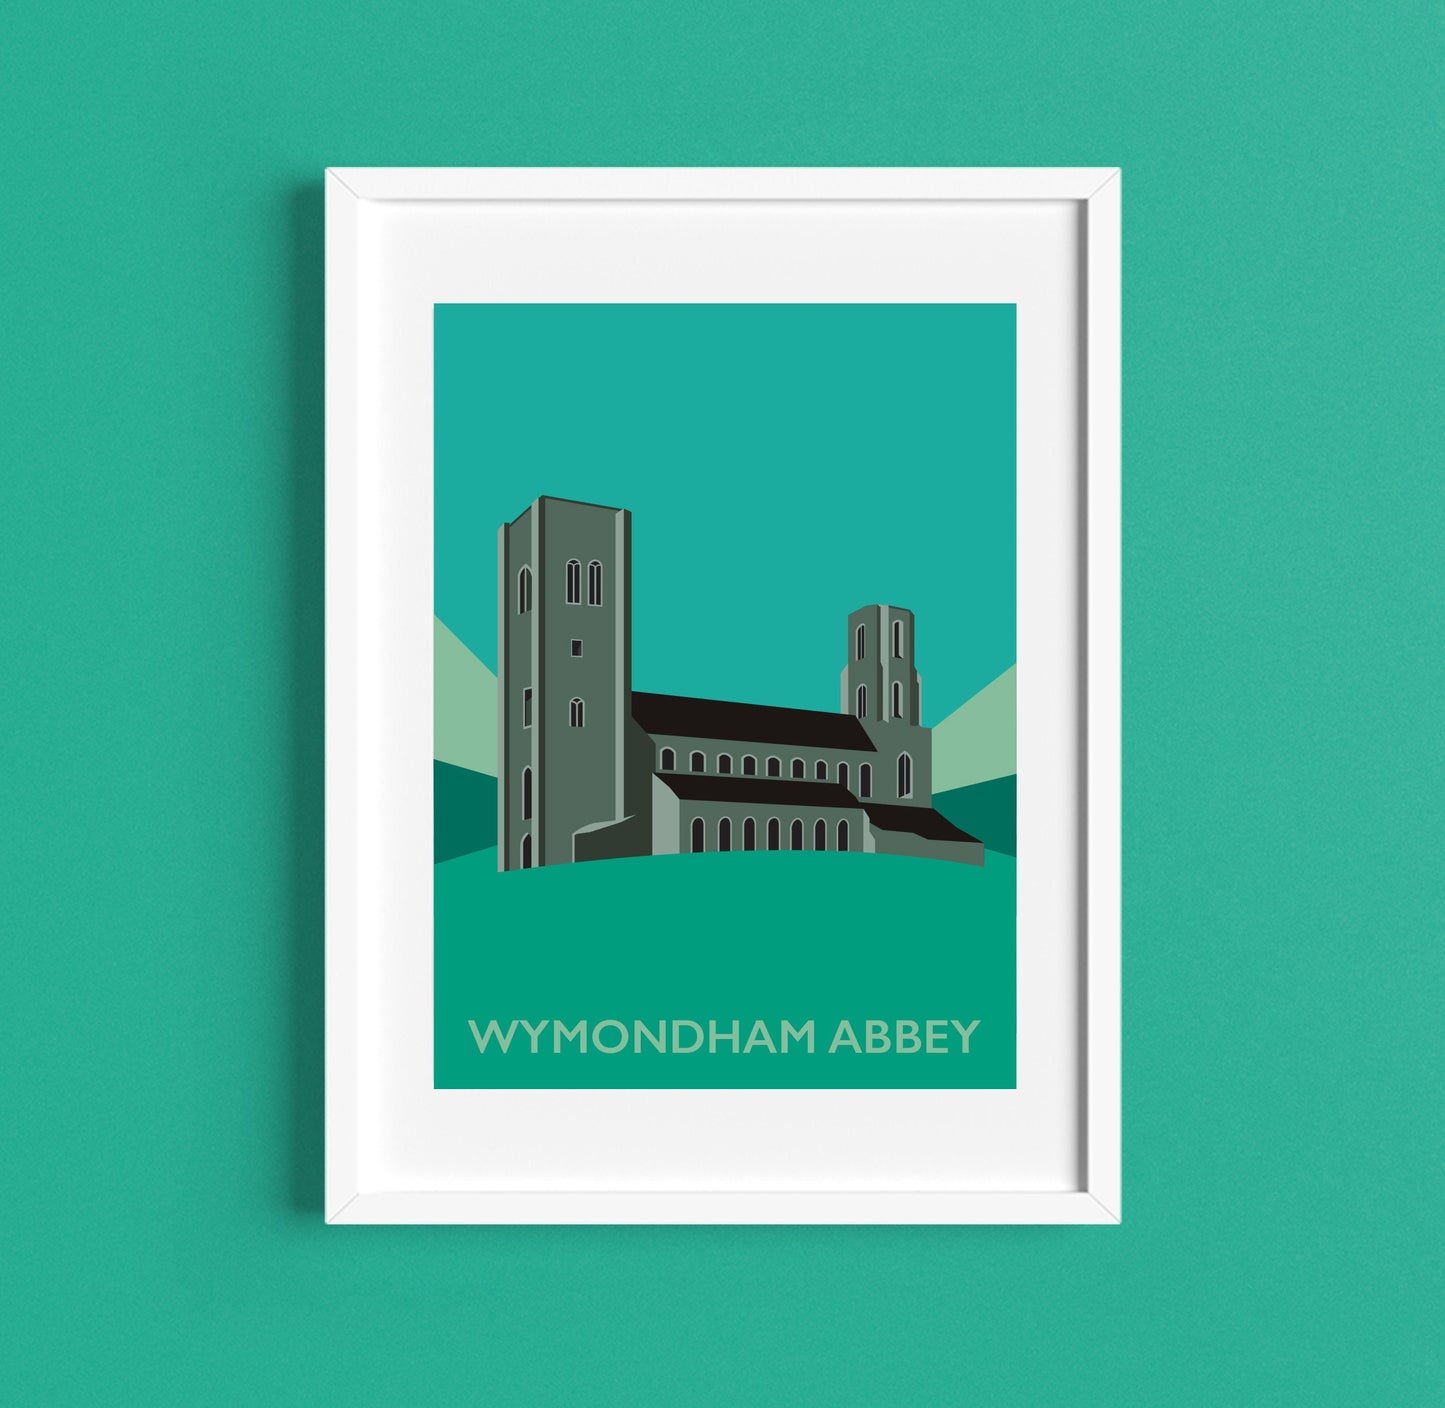 WYMONDHAM ABBEY - Travel Poster - Print - Illustration by Rebecca Pymar